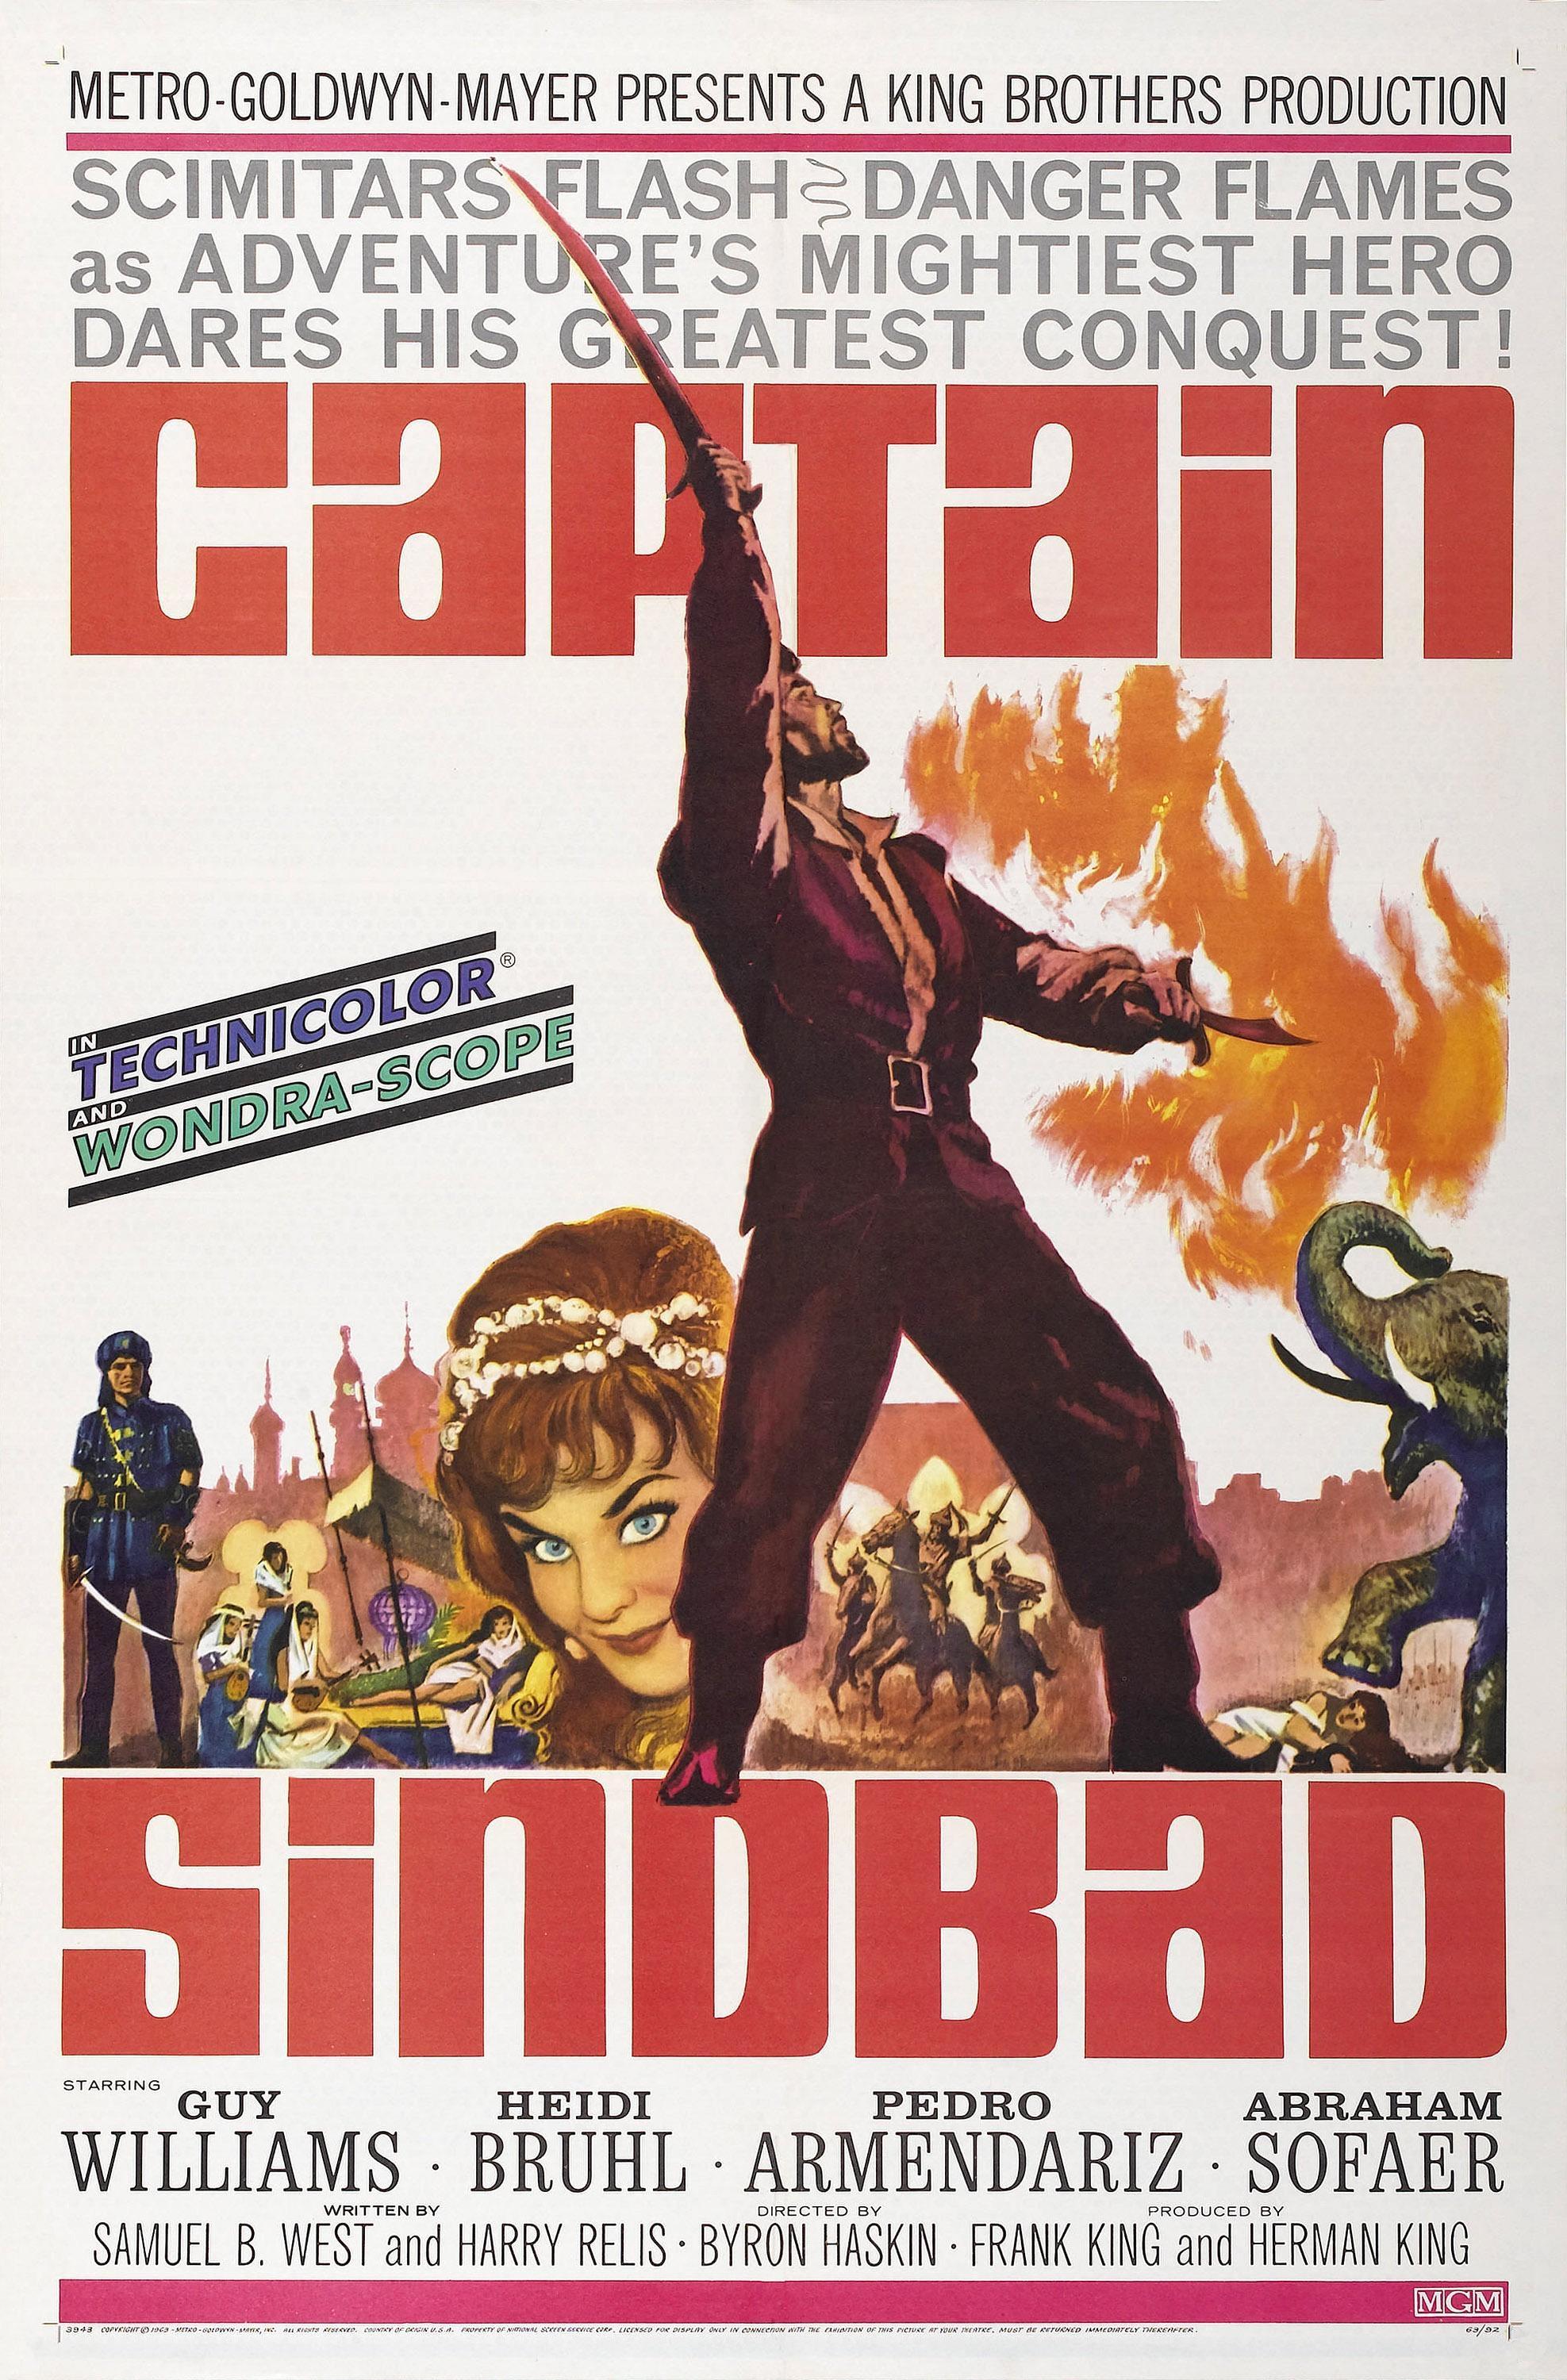 Постер фильма Captain Sindbad